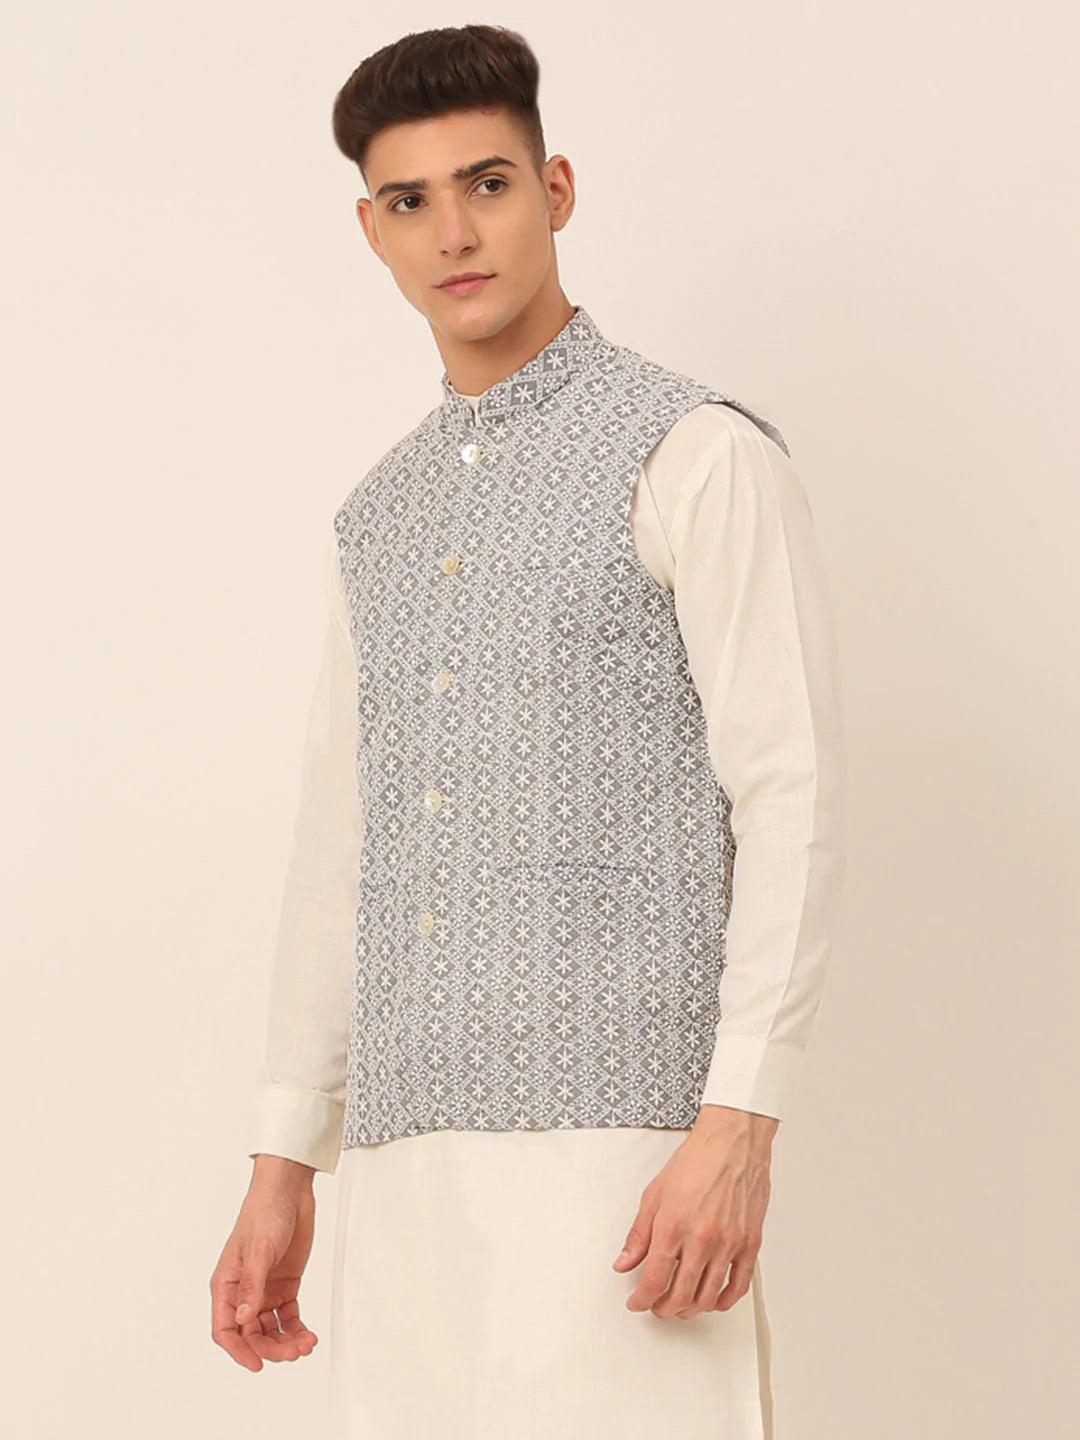 Men's Grey Embroidered Nehru Jackets ( JOWC 4041 Grey )